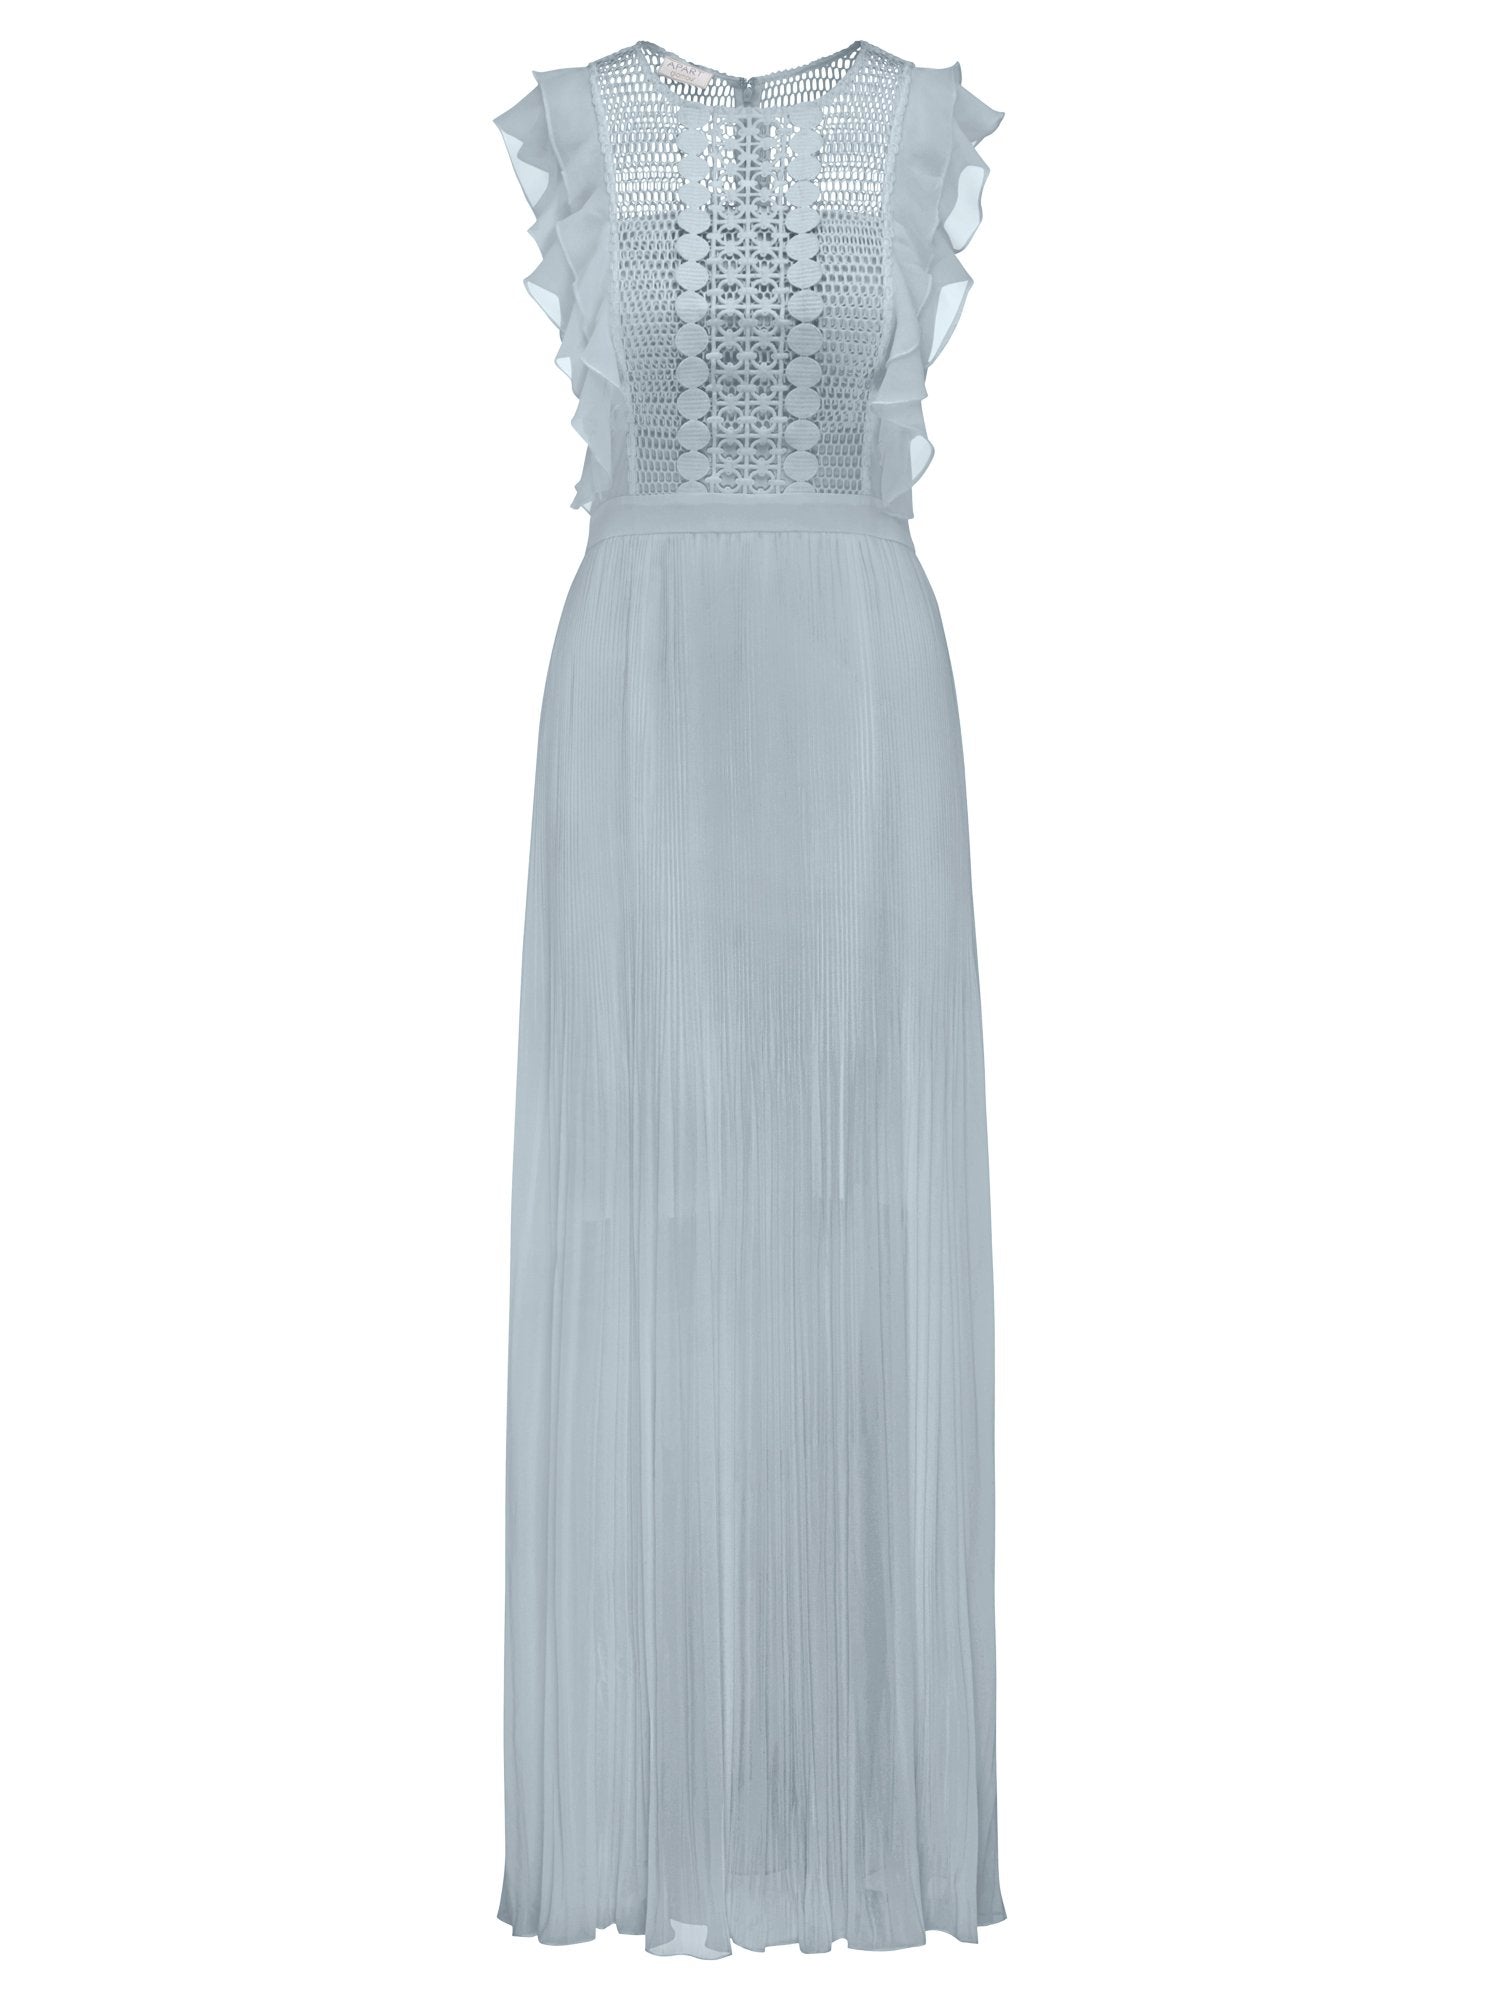 APART Abendkleid aus transparenter Netzware | hellblau